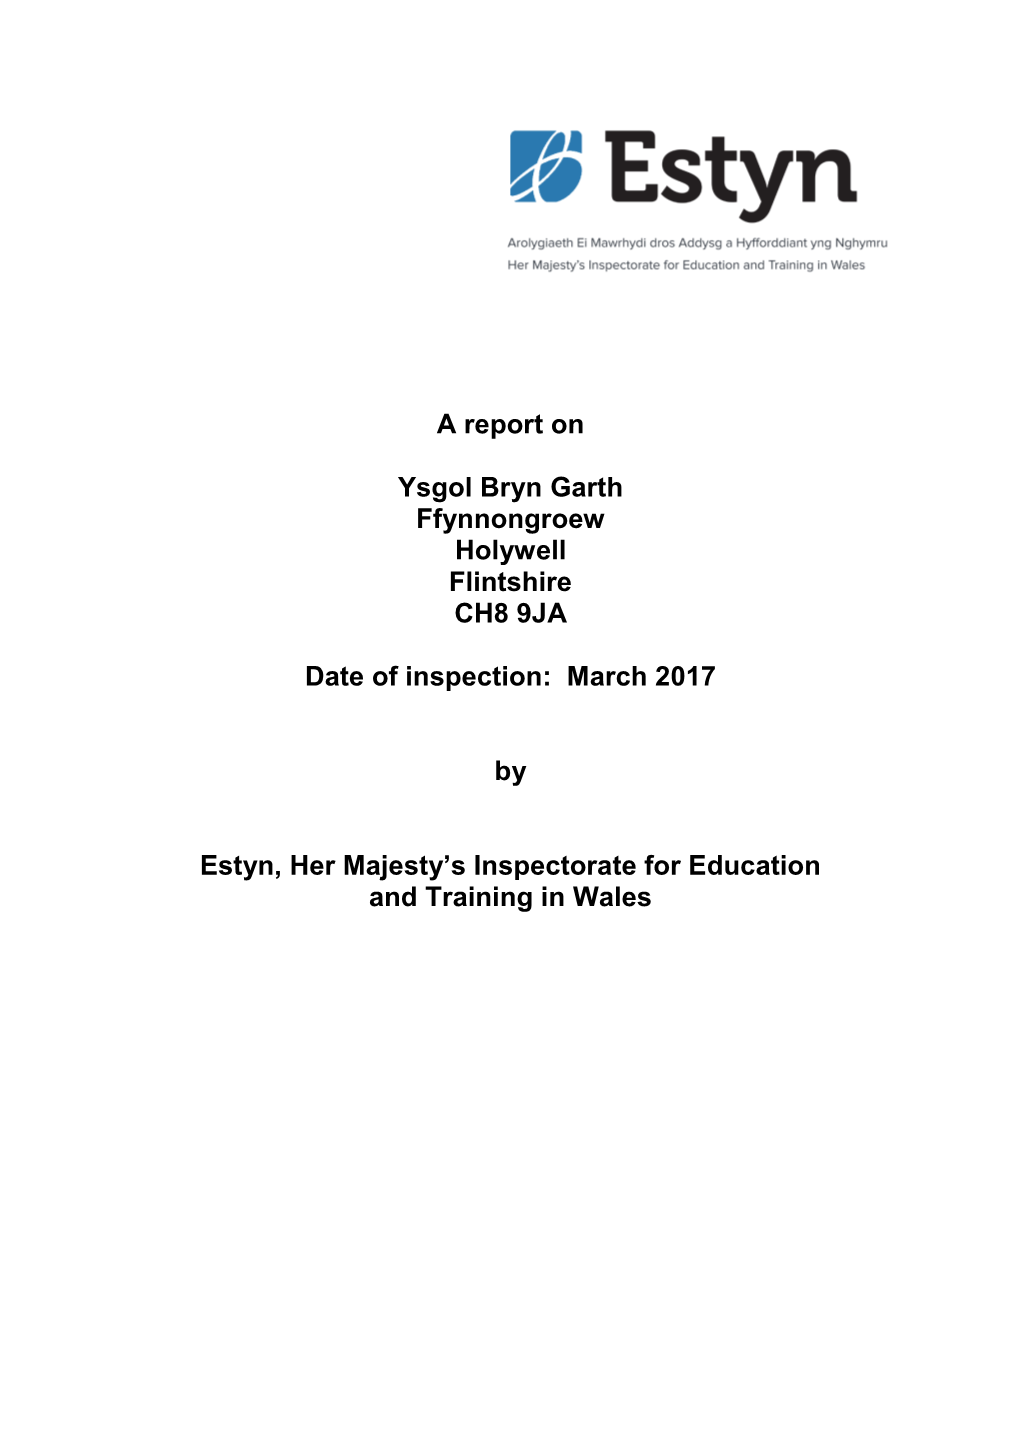 Inspection Report Ysgol Bryn Garth 2017